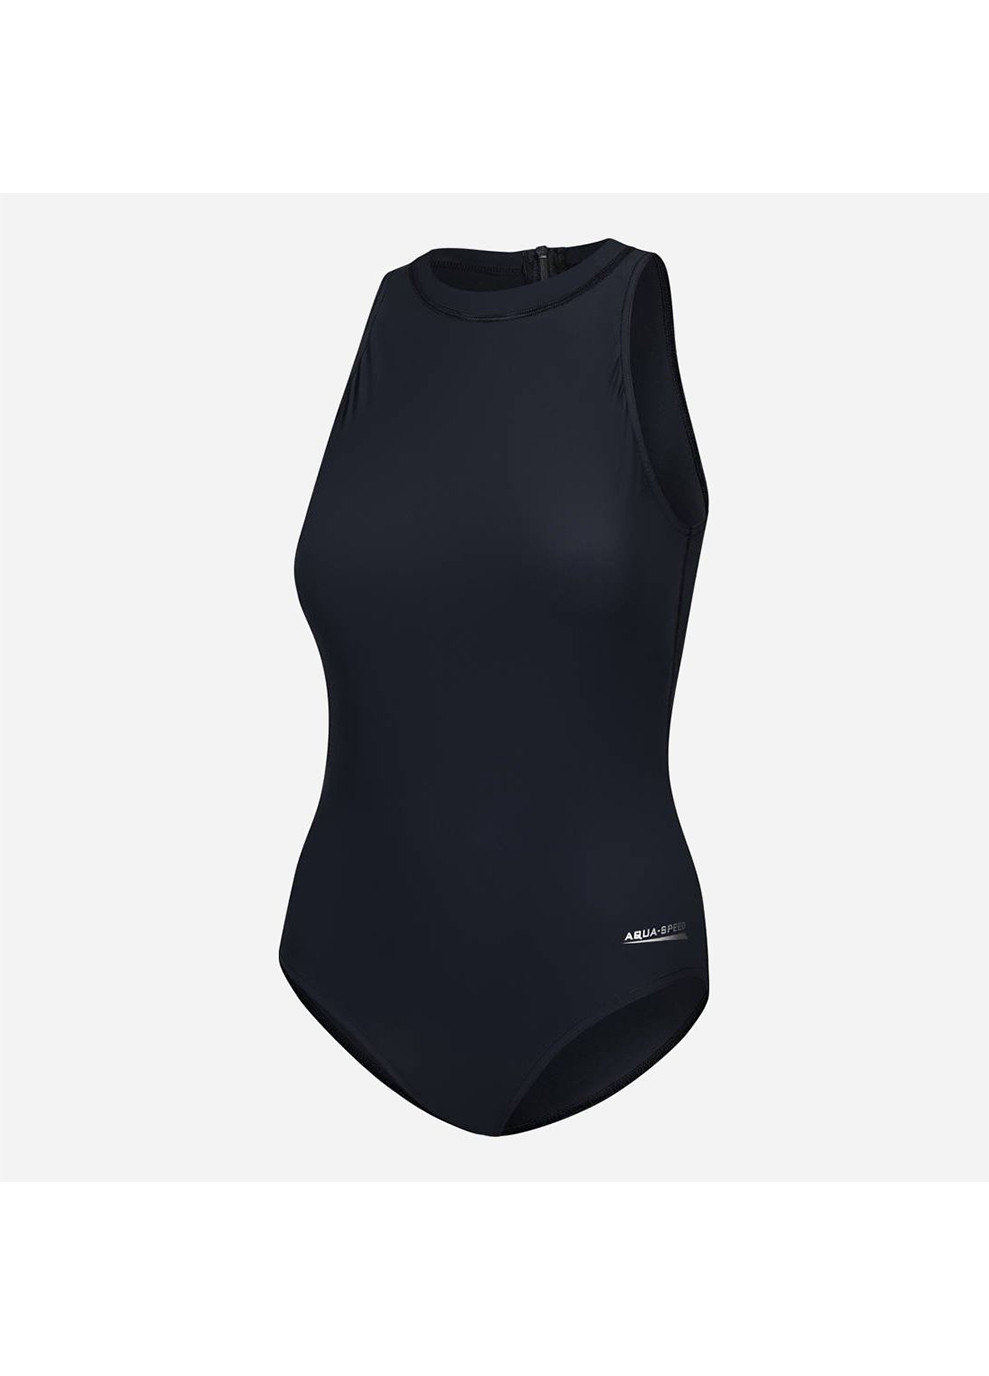 Черный демисезонный купальник закрытый для женщин blanka черный 36 (s) 370-01 s Aqua Speed